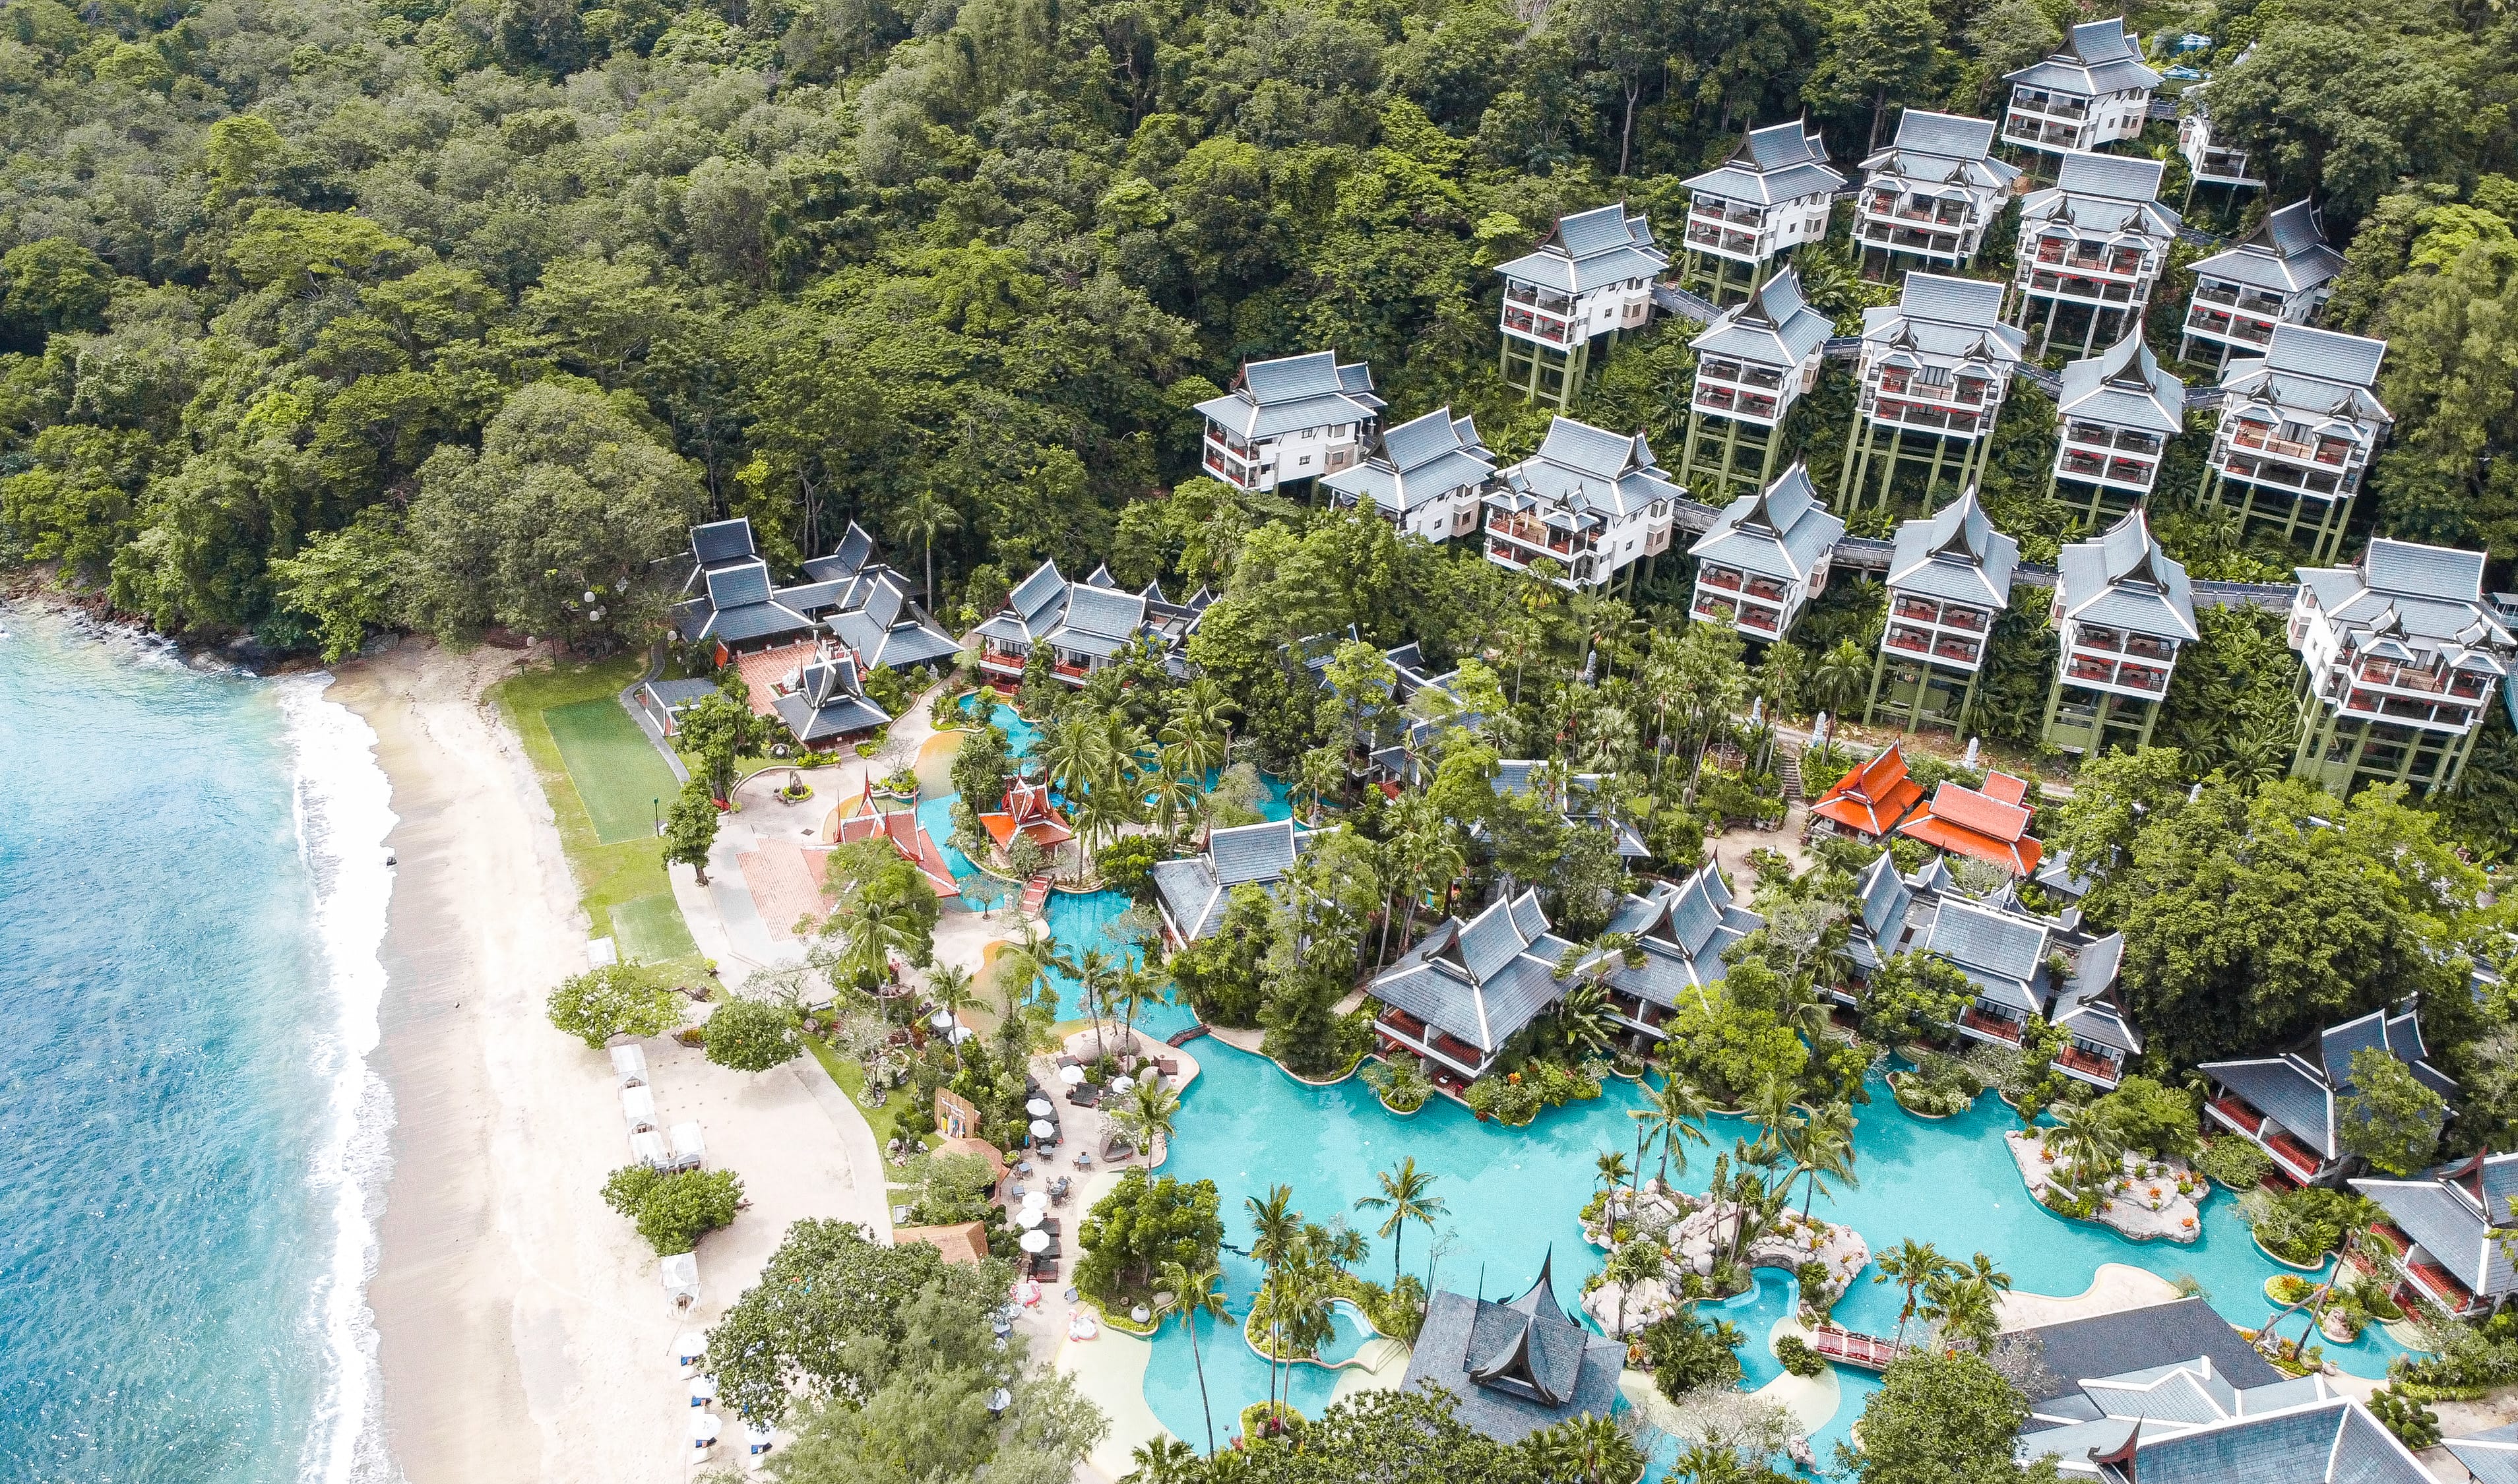 Thavorn Beach Village Resort & Spa